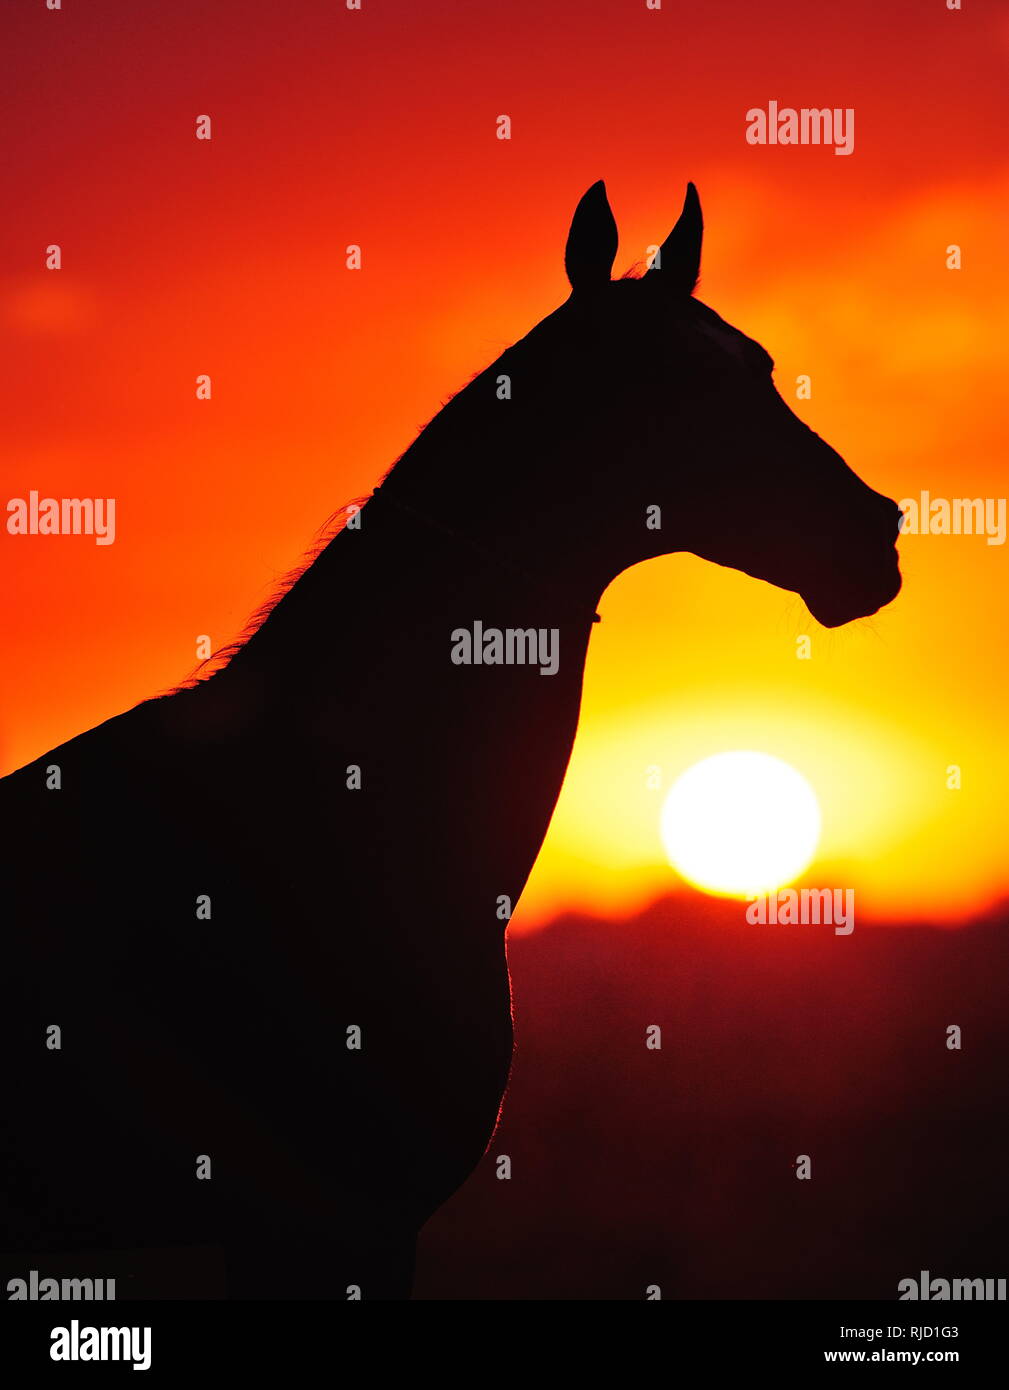 Silueta natural de un caballo en el atardecer las luces en la noche, el caballo está afuera en el campo viendo la gran sol rojizo bajando, vertical, lateral v Foto de stock